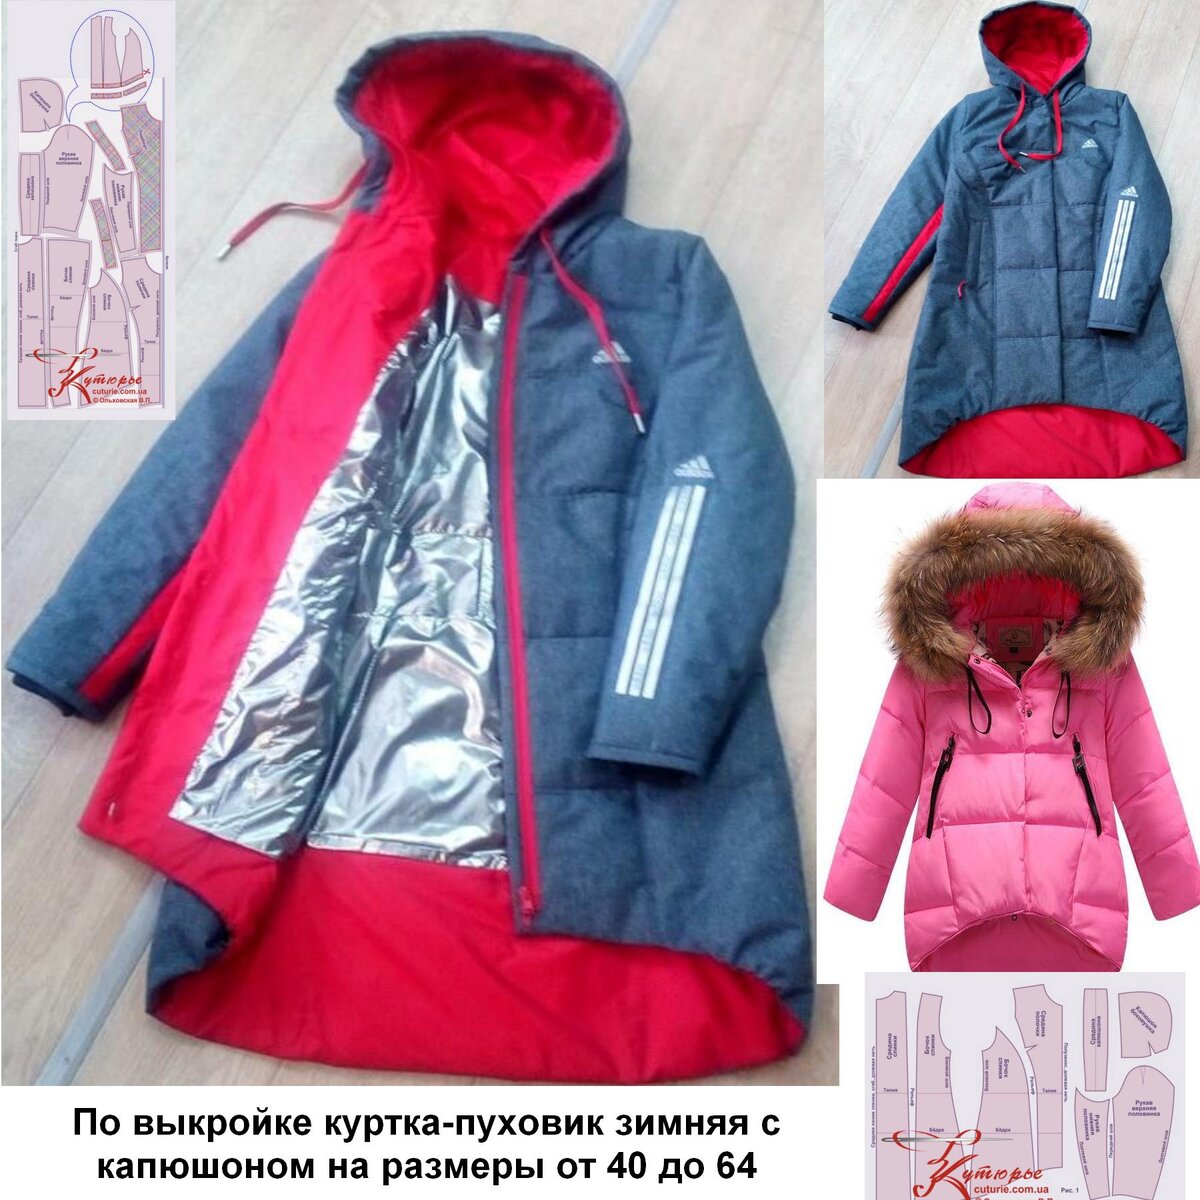 Детская куртка из софтшелла, выкройка от Burda Nordic (129.04.17)